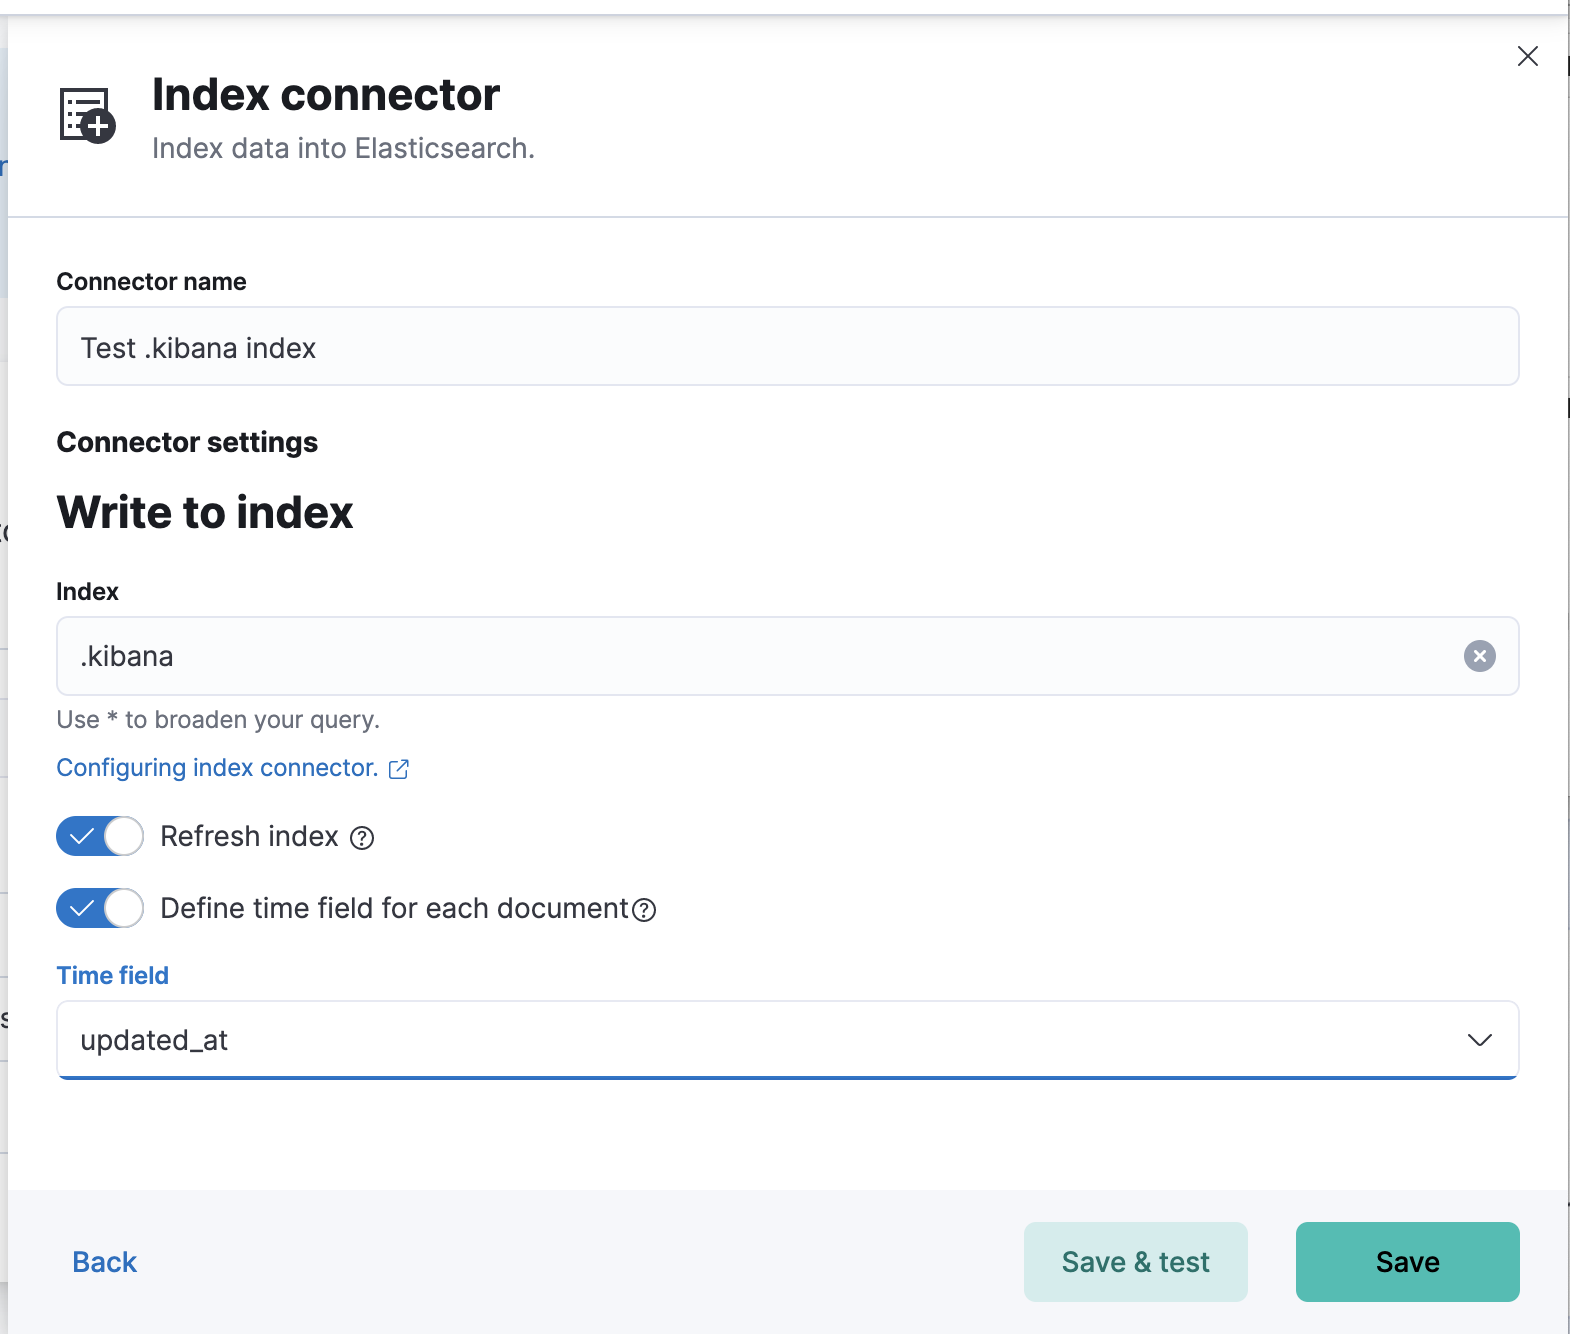 Index connector